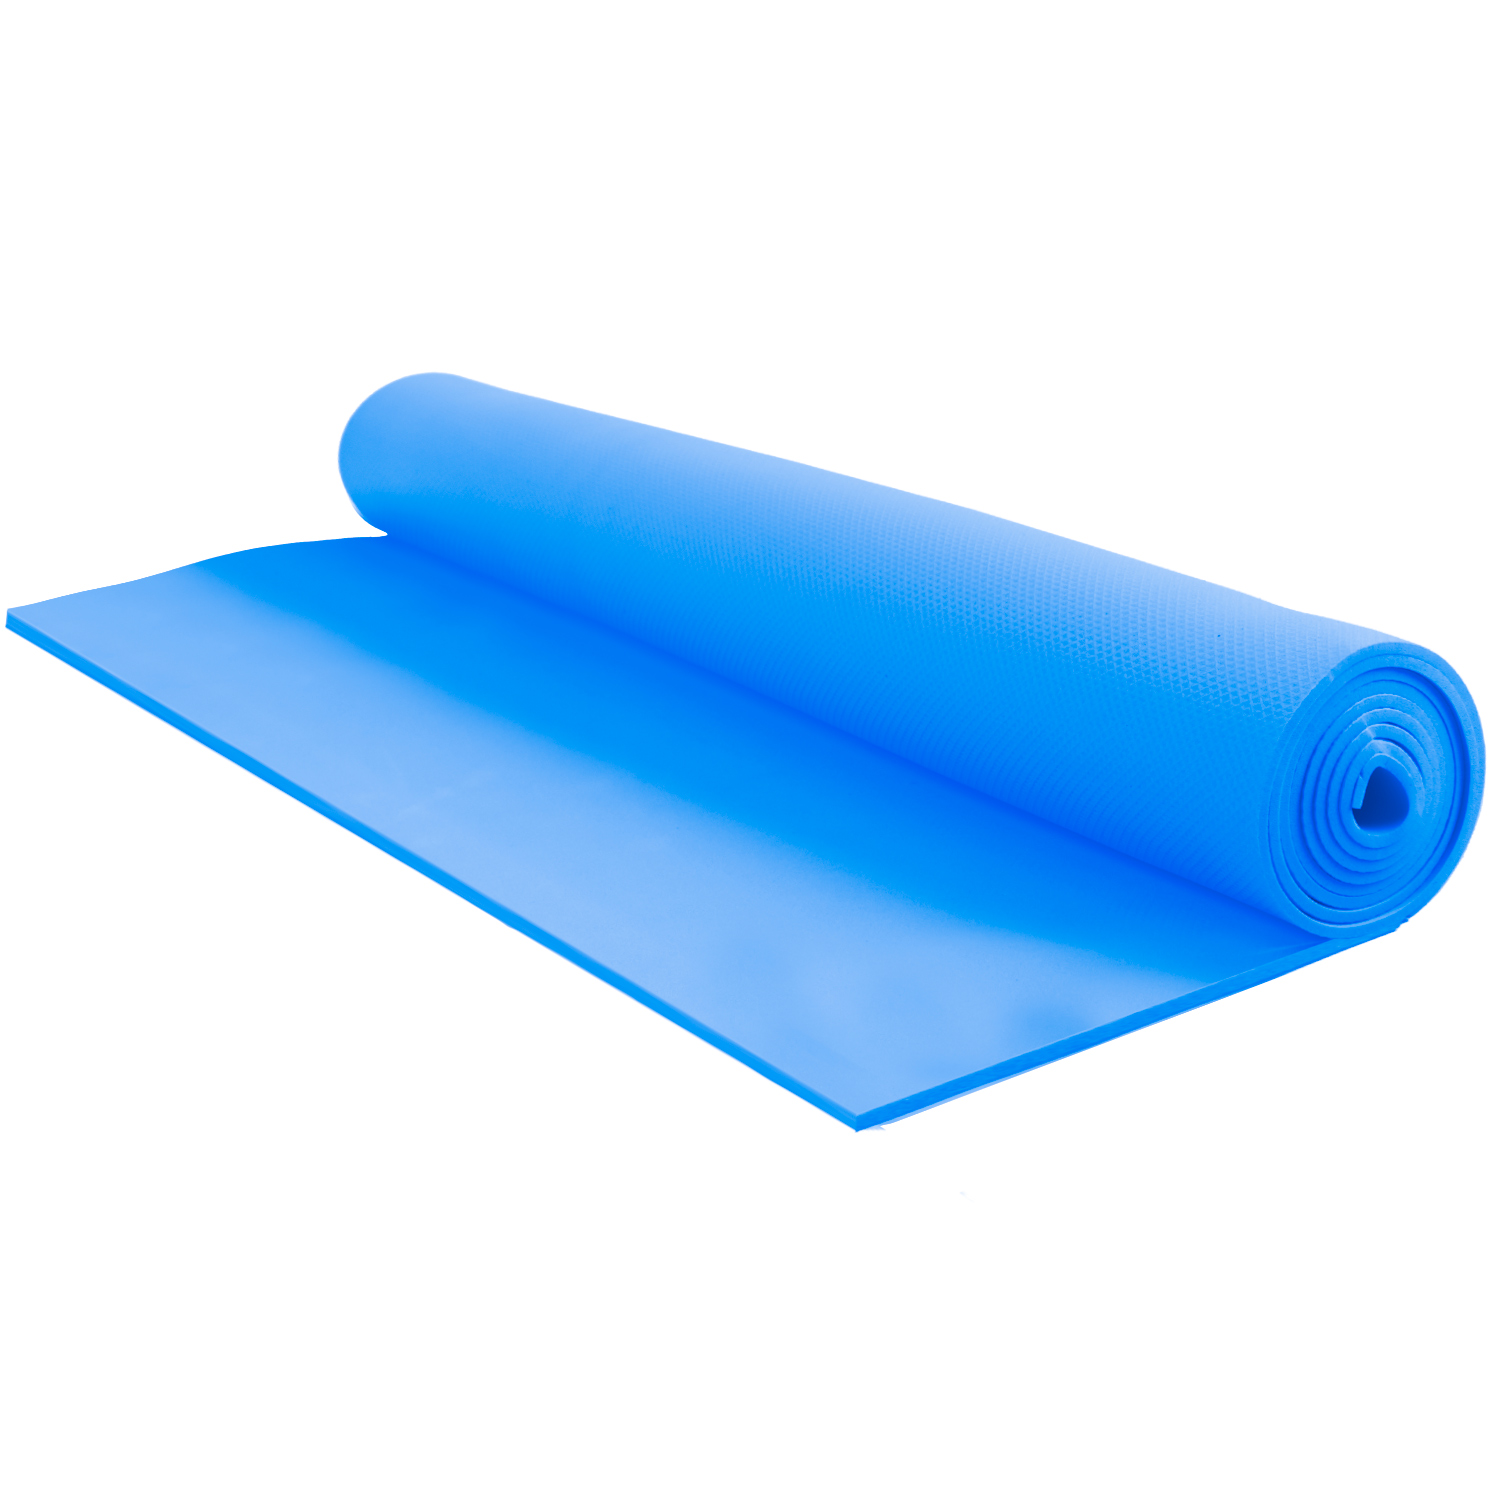 Tapis de yoga pour l'exercice et mise en forme - Bleu. Colour